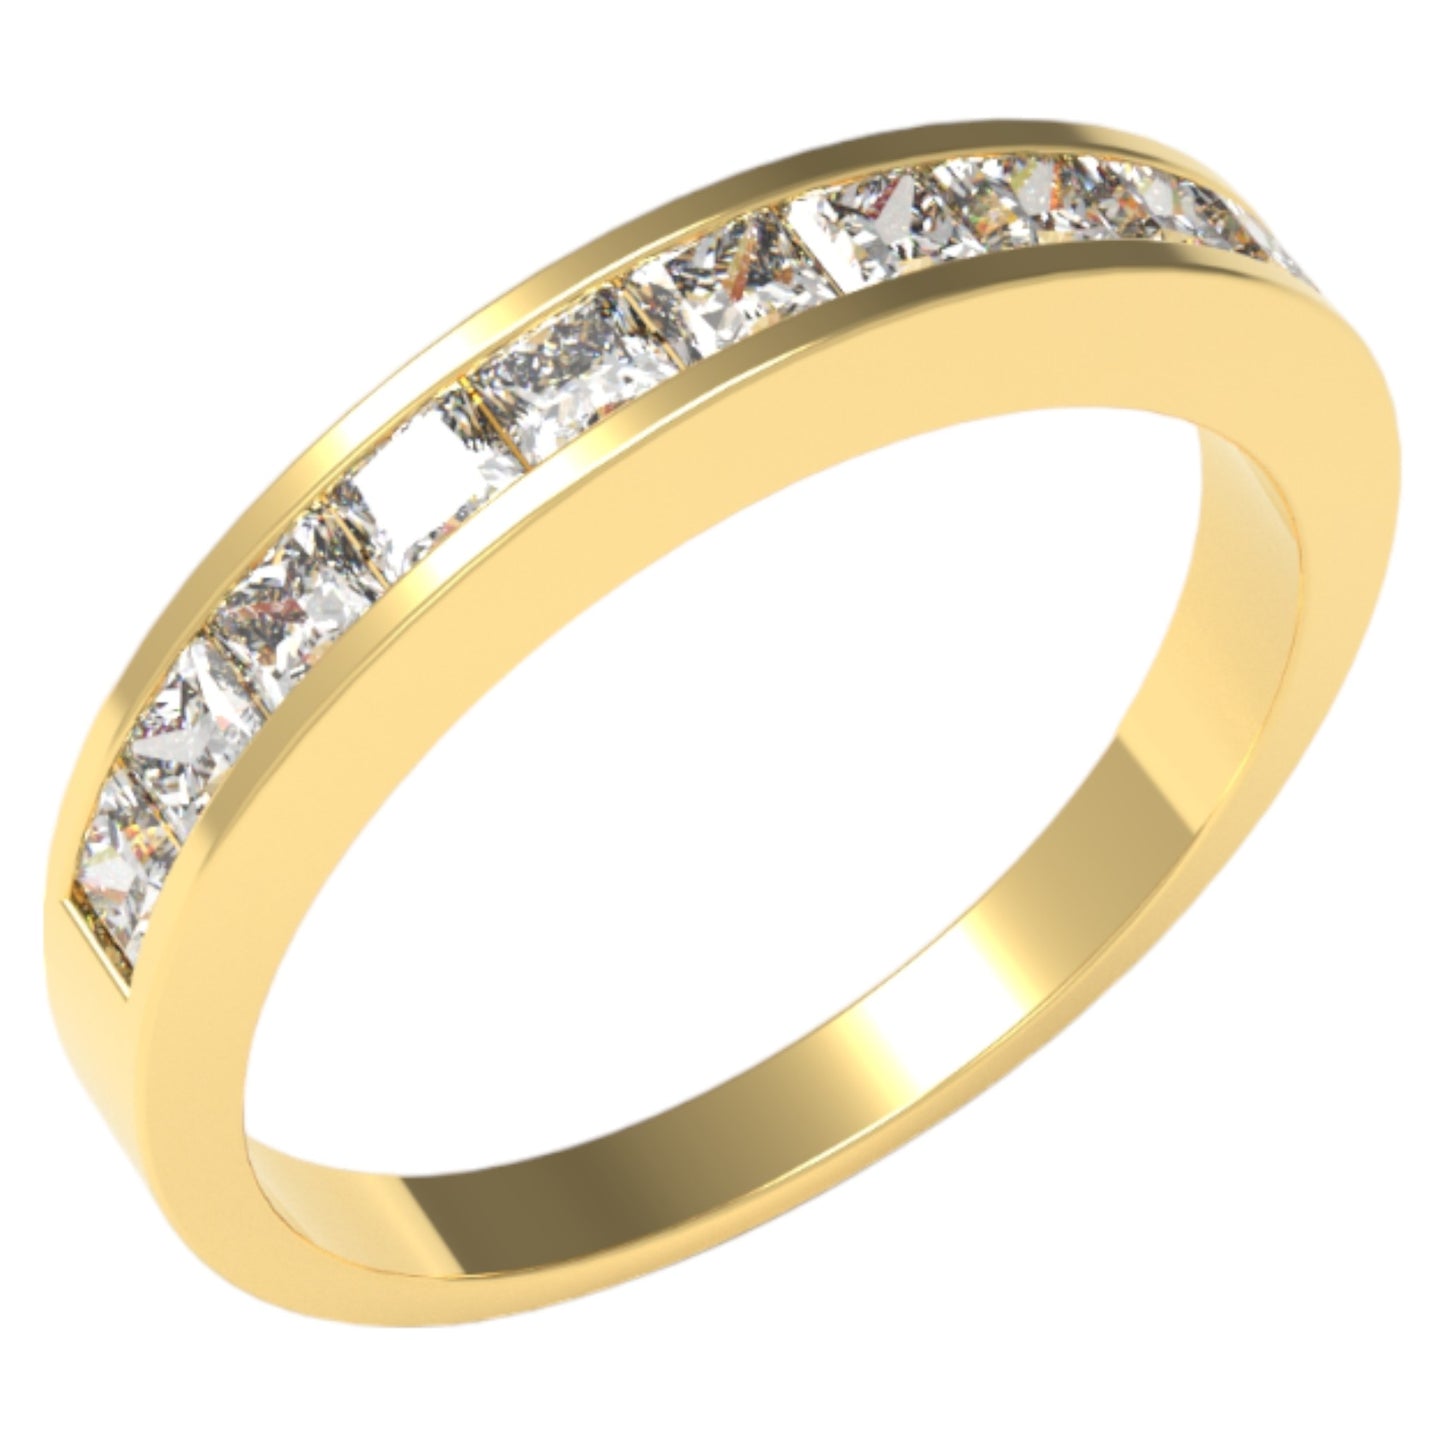 14K Yellow Gold 0.40 Ct Princess Cut Diamond Channel-Set Wedding Band - Size 6.5